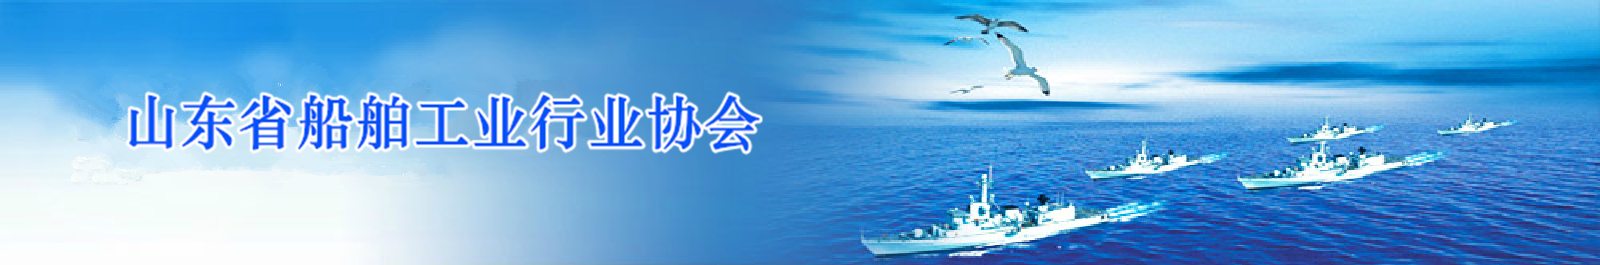 山东省船舶工业协会